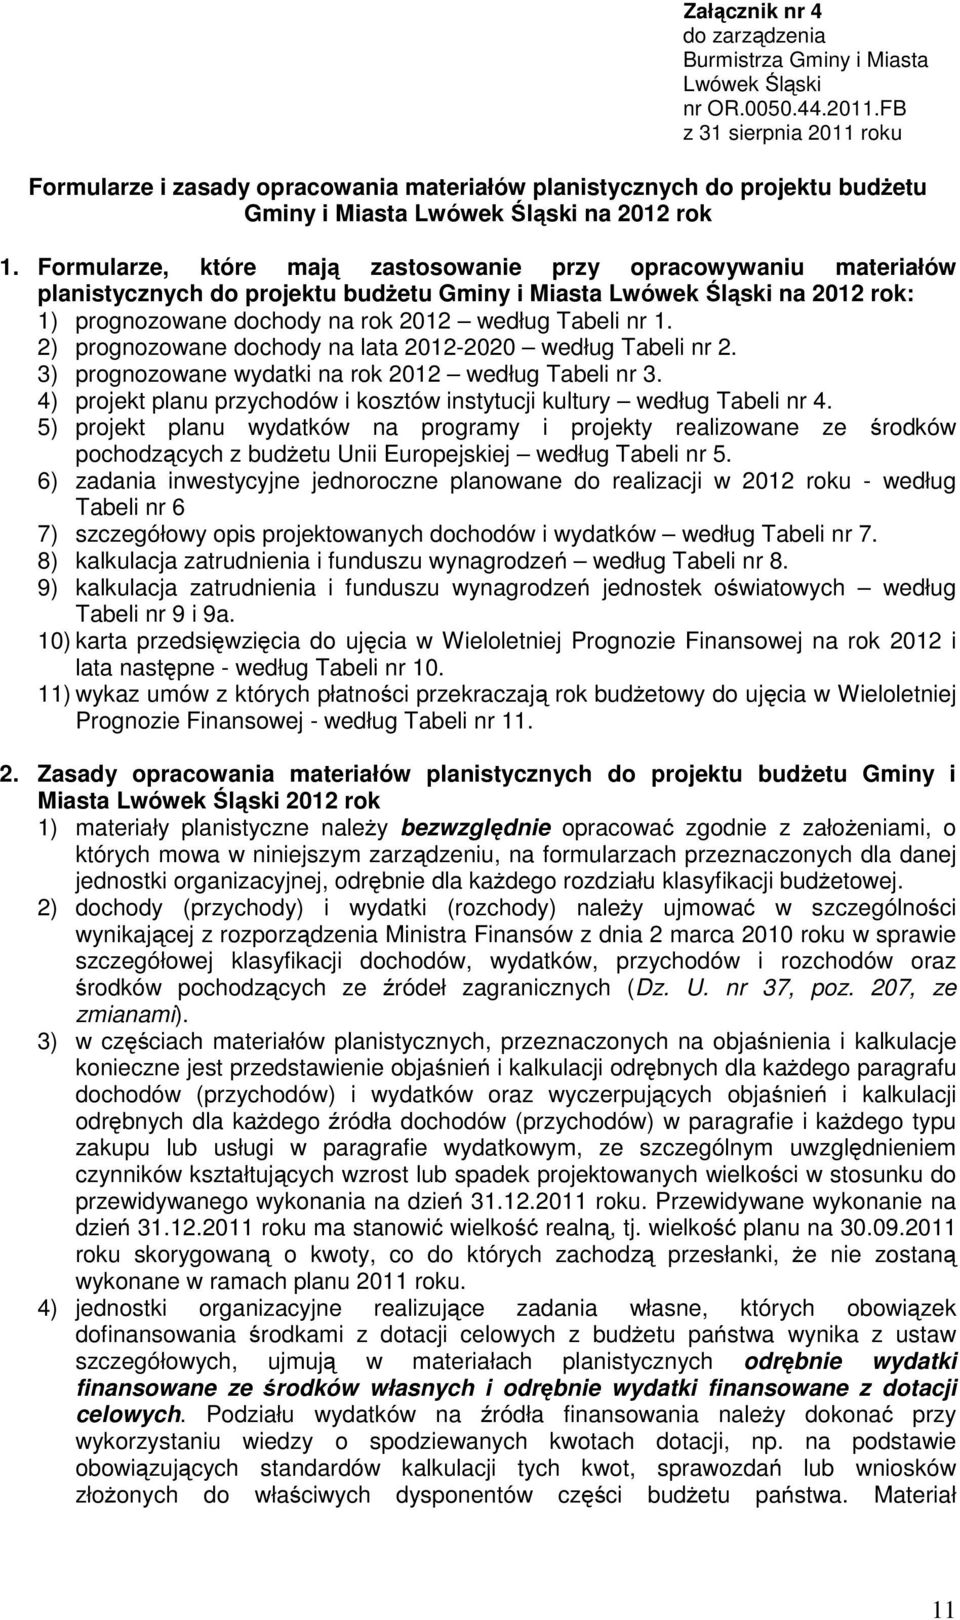 Formularze, które mają zastosowanie przy opracowywaniu materiałów planistycznych do projektu budżetu Gminy i Miasta Lwówek Śląski na 2012 rok: 1) prognozowane dochody na rok 2012 według Tabeli nr 1.